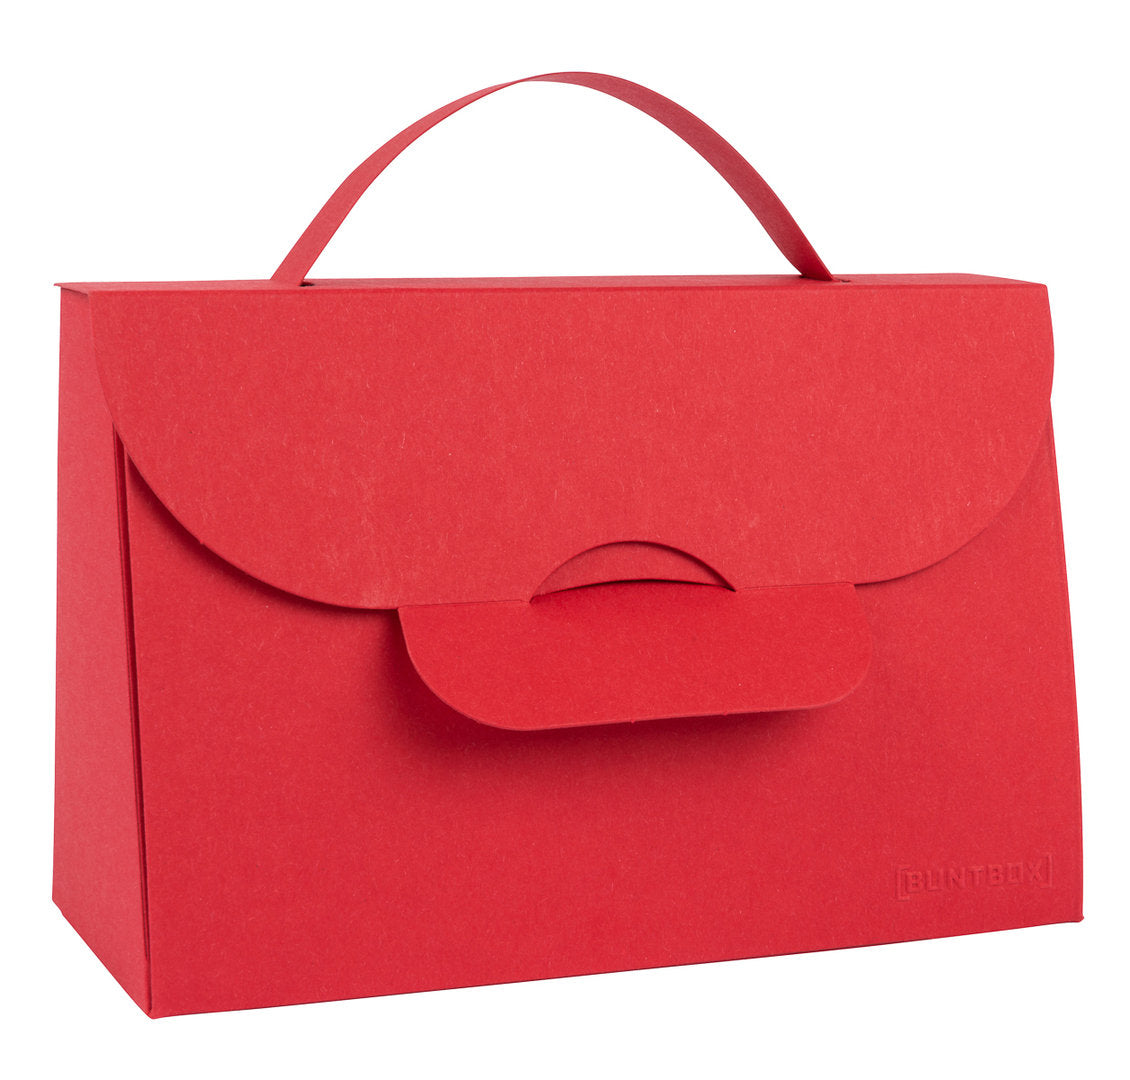 Handtasche aus Karton XL, rubin rot, 1 Stk